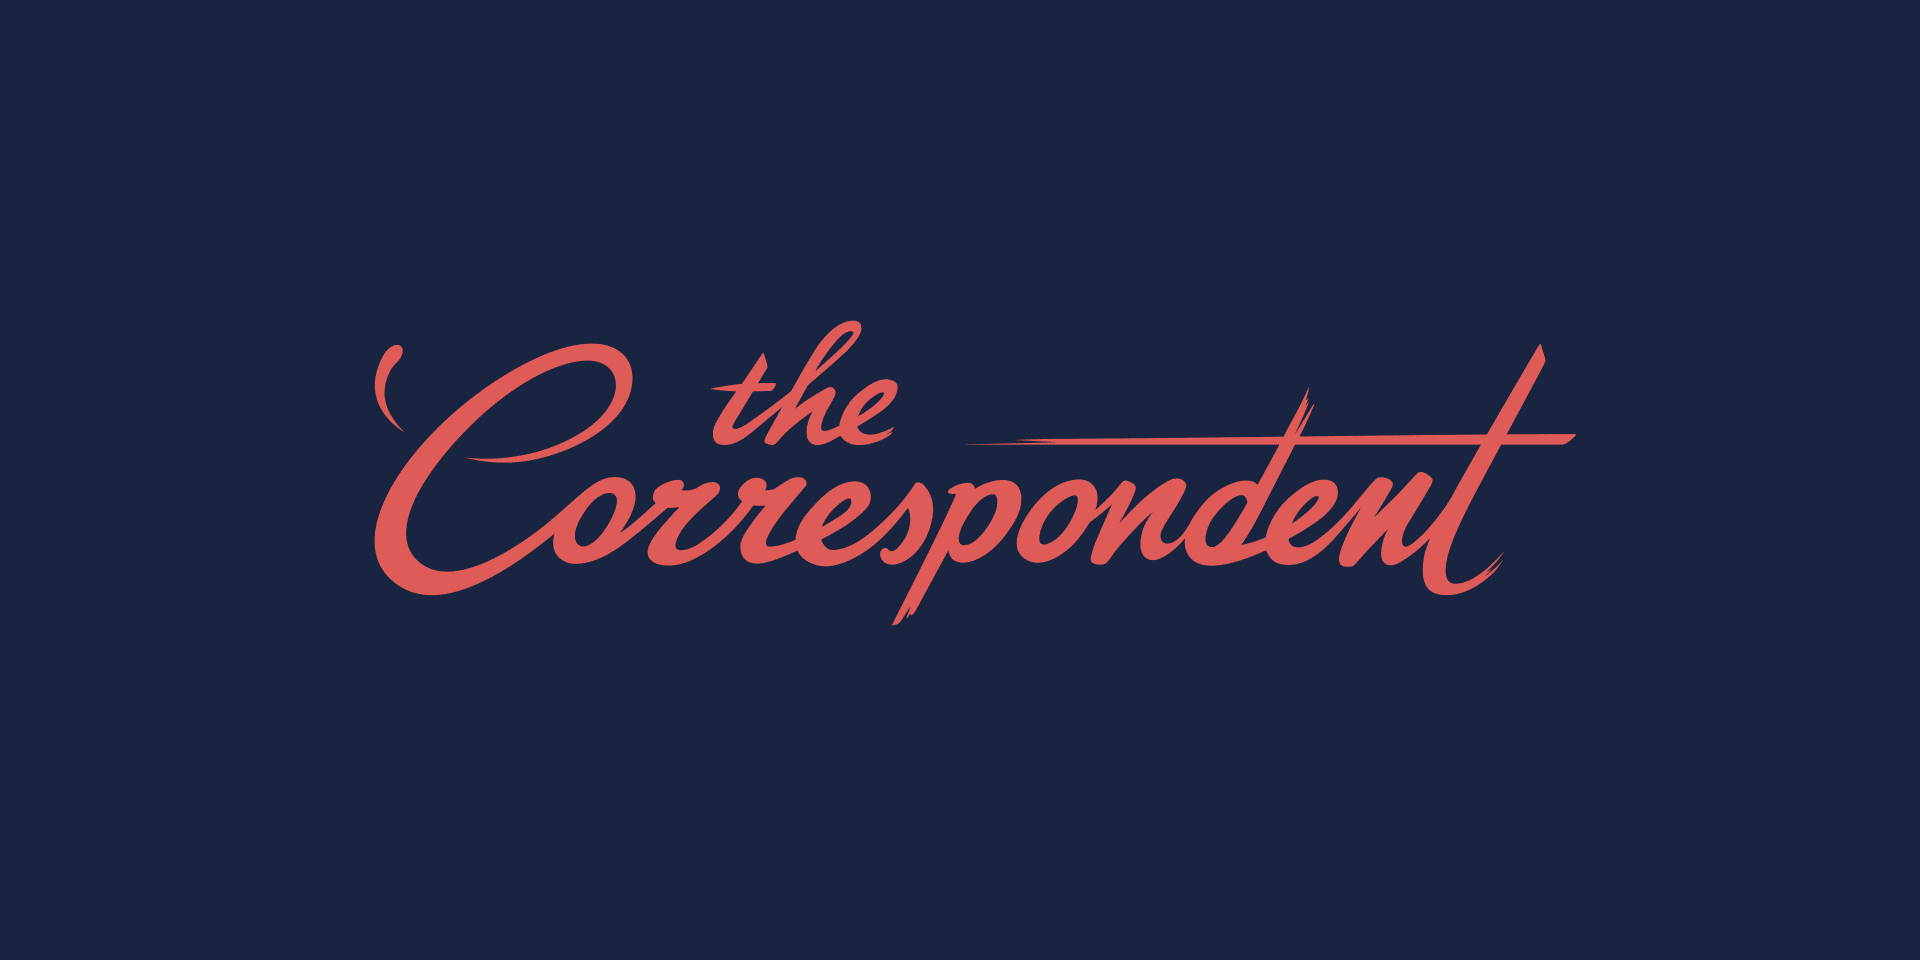 Rood geanimeerd logo van The Correspondent tegen een donkerblauwe achtergrond